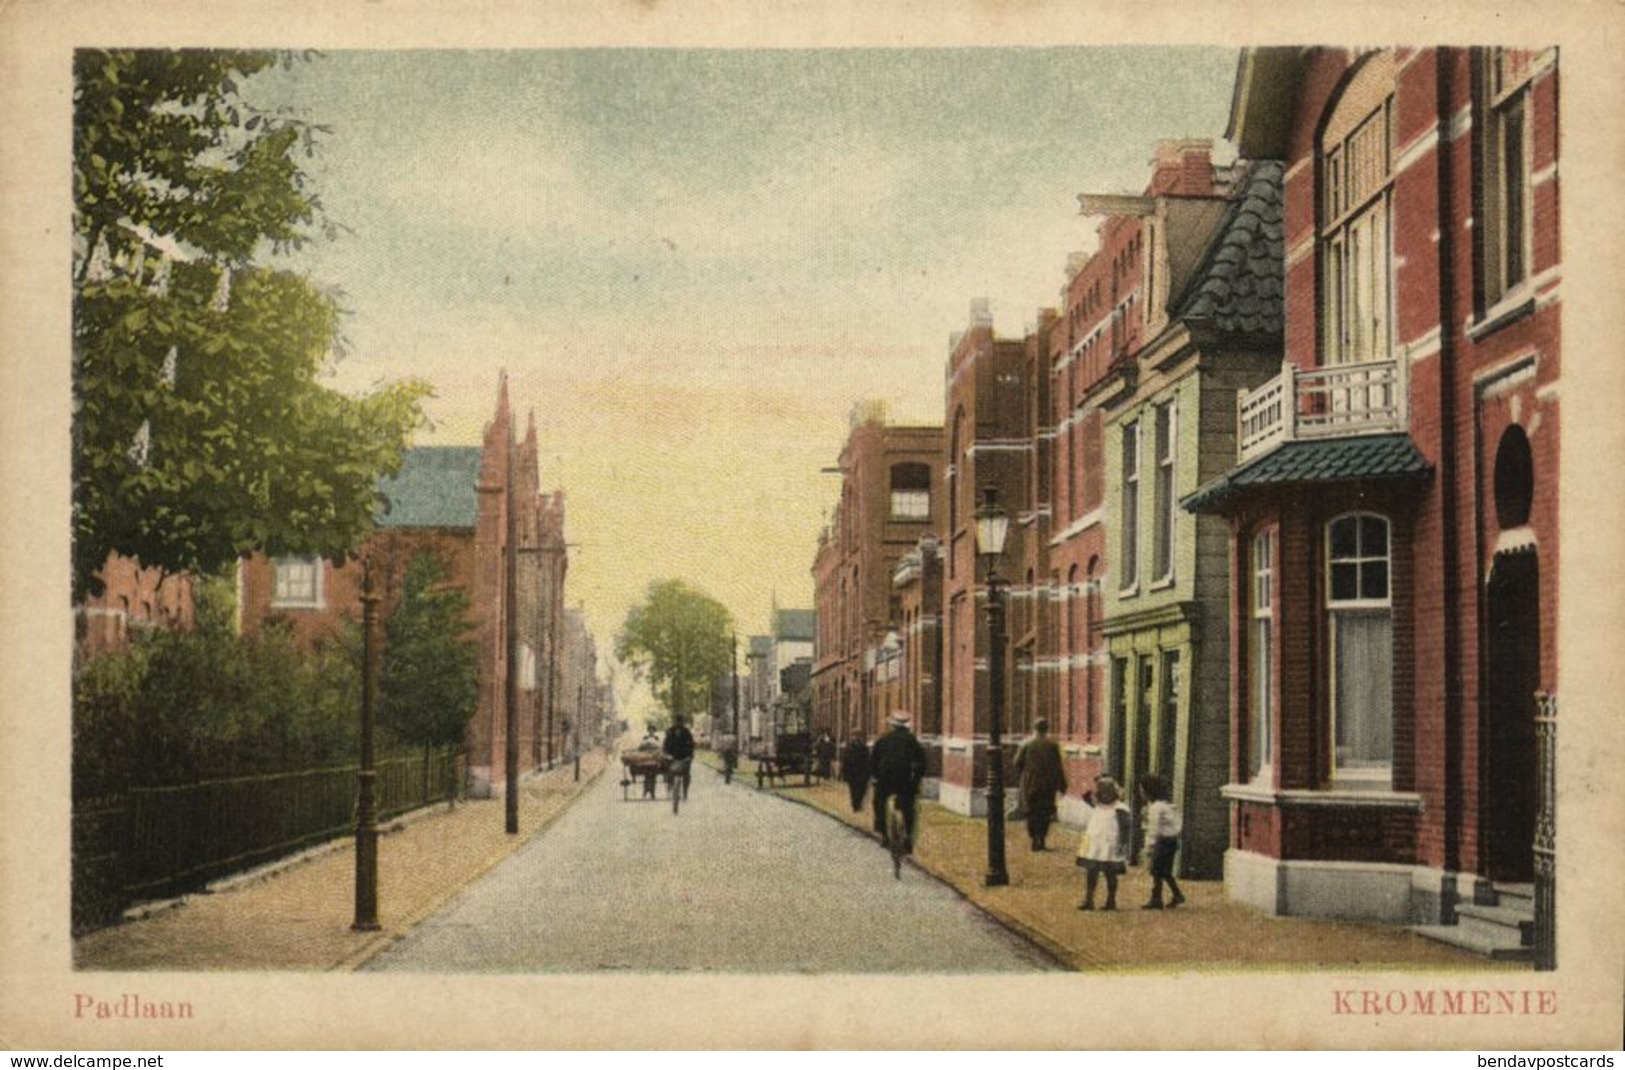 Nederland, KROMMENIE, Padlaan (1920s) Ansichtkaart - Krommenie